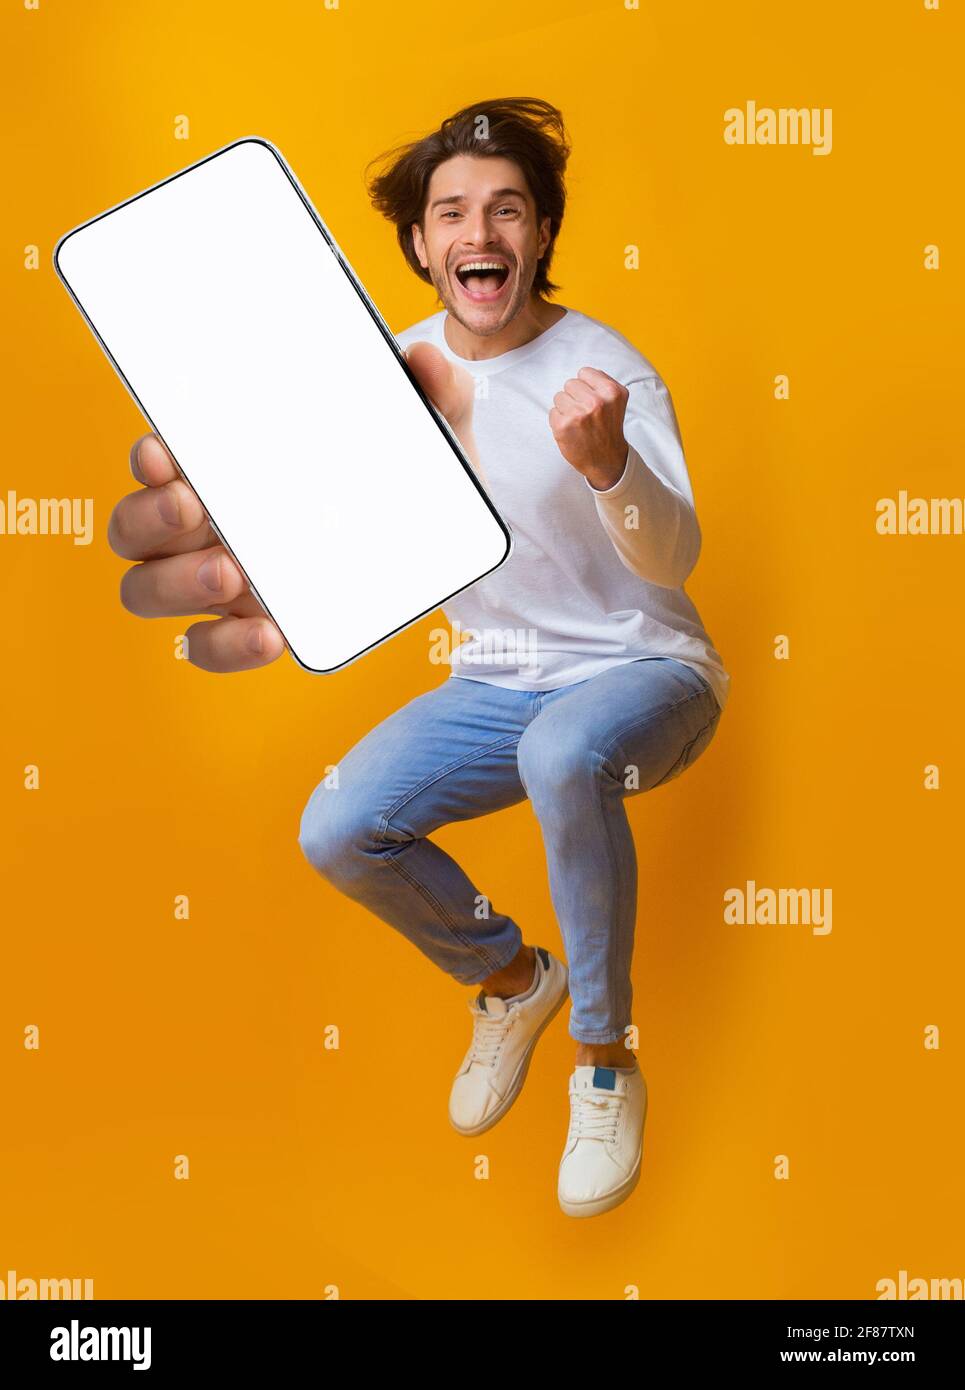 Neue tolle mobile App. Springen emotionaler junger Mann zeigt Smartphone mit leerem Bildschirm auf orangefarbenem Hintergrund, Mockup Stockfoto